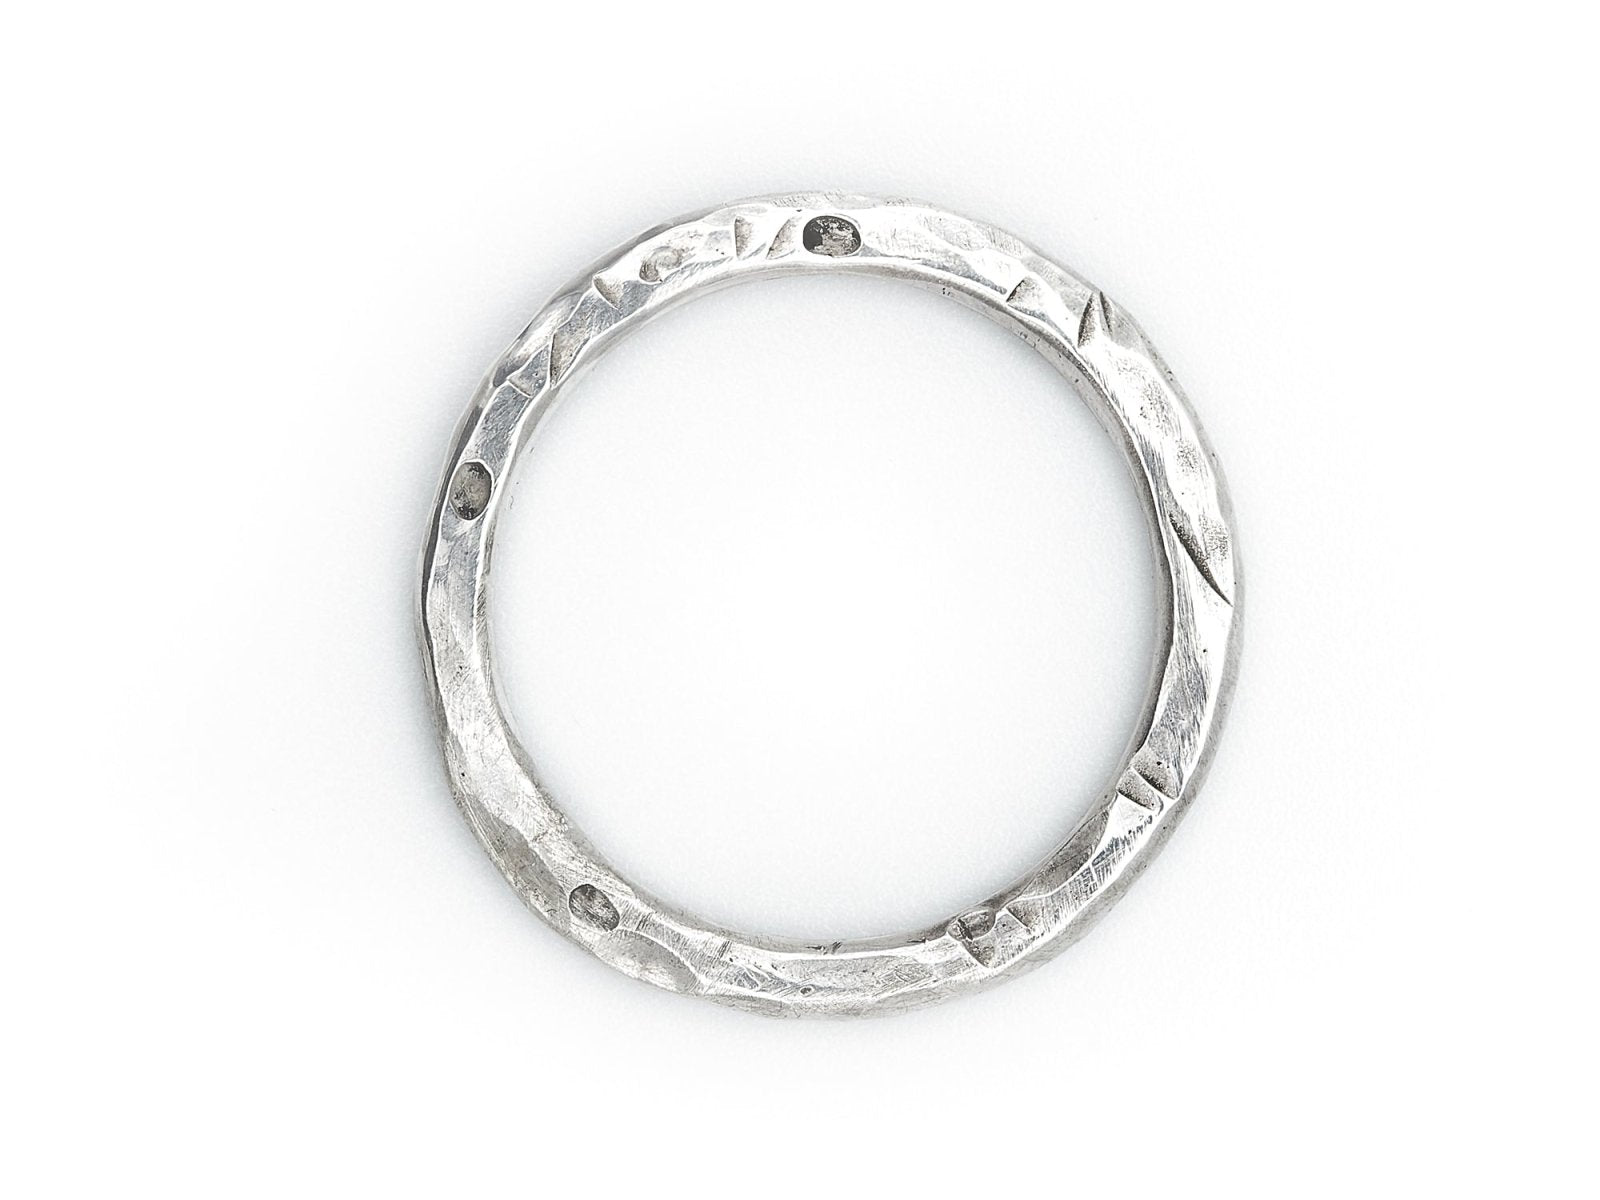 Ring aus 925 Sterling Silber grob geschmiedet für Herren - Männer Silberring